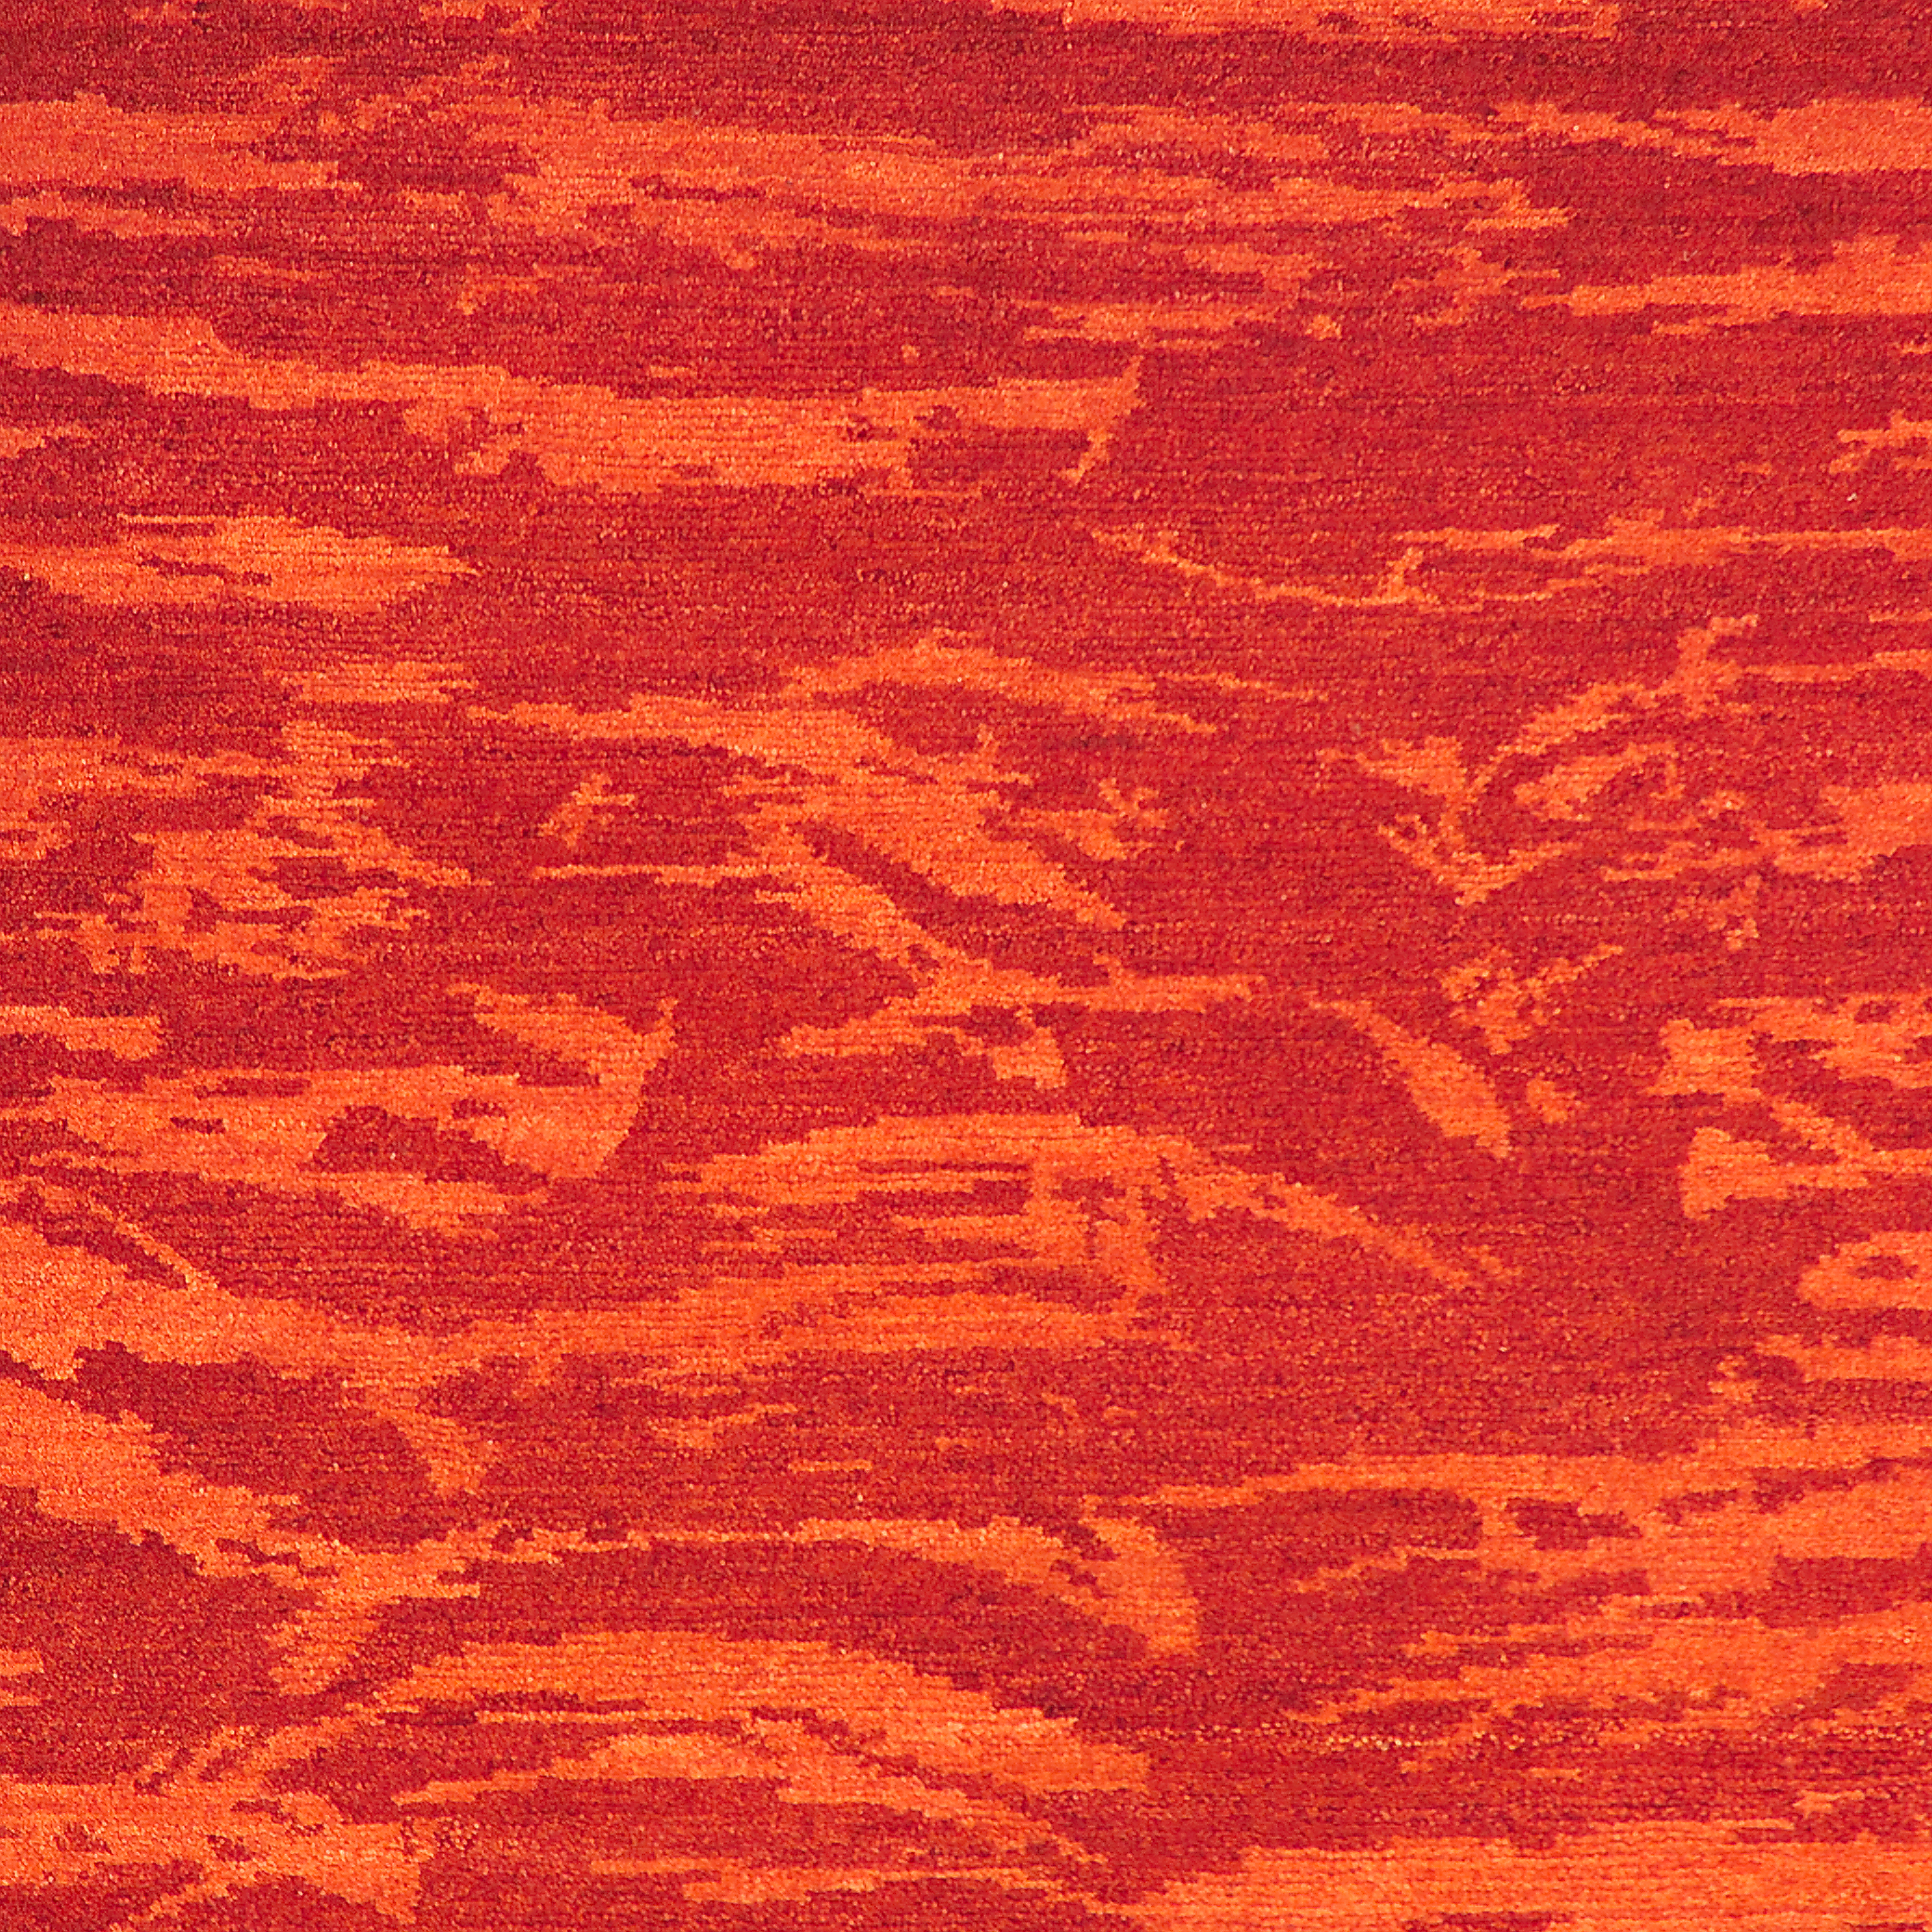 Geba Teppich "Choonyok" in rot mit tigerartigem Design in unterschiedlichen Rottönen, aus Nepal, 100 Knoten, gefertigt aus pflanzlich gefärbter tibetischer Hochlandschafwolle - Produktbild - Geba Teppich